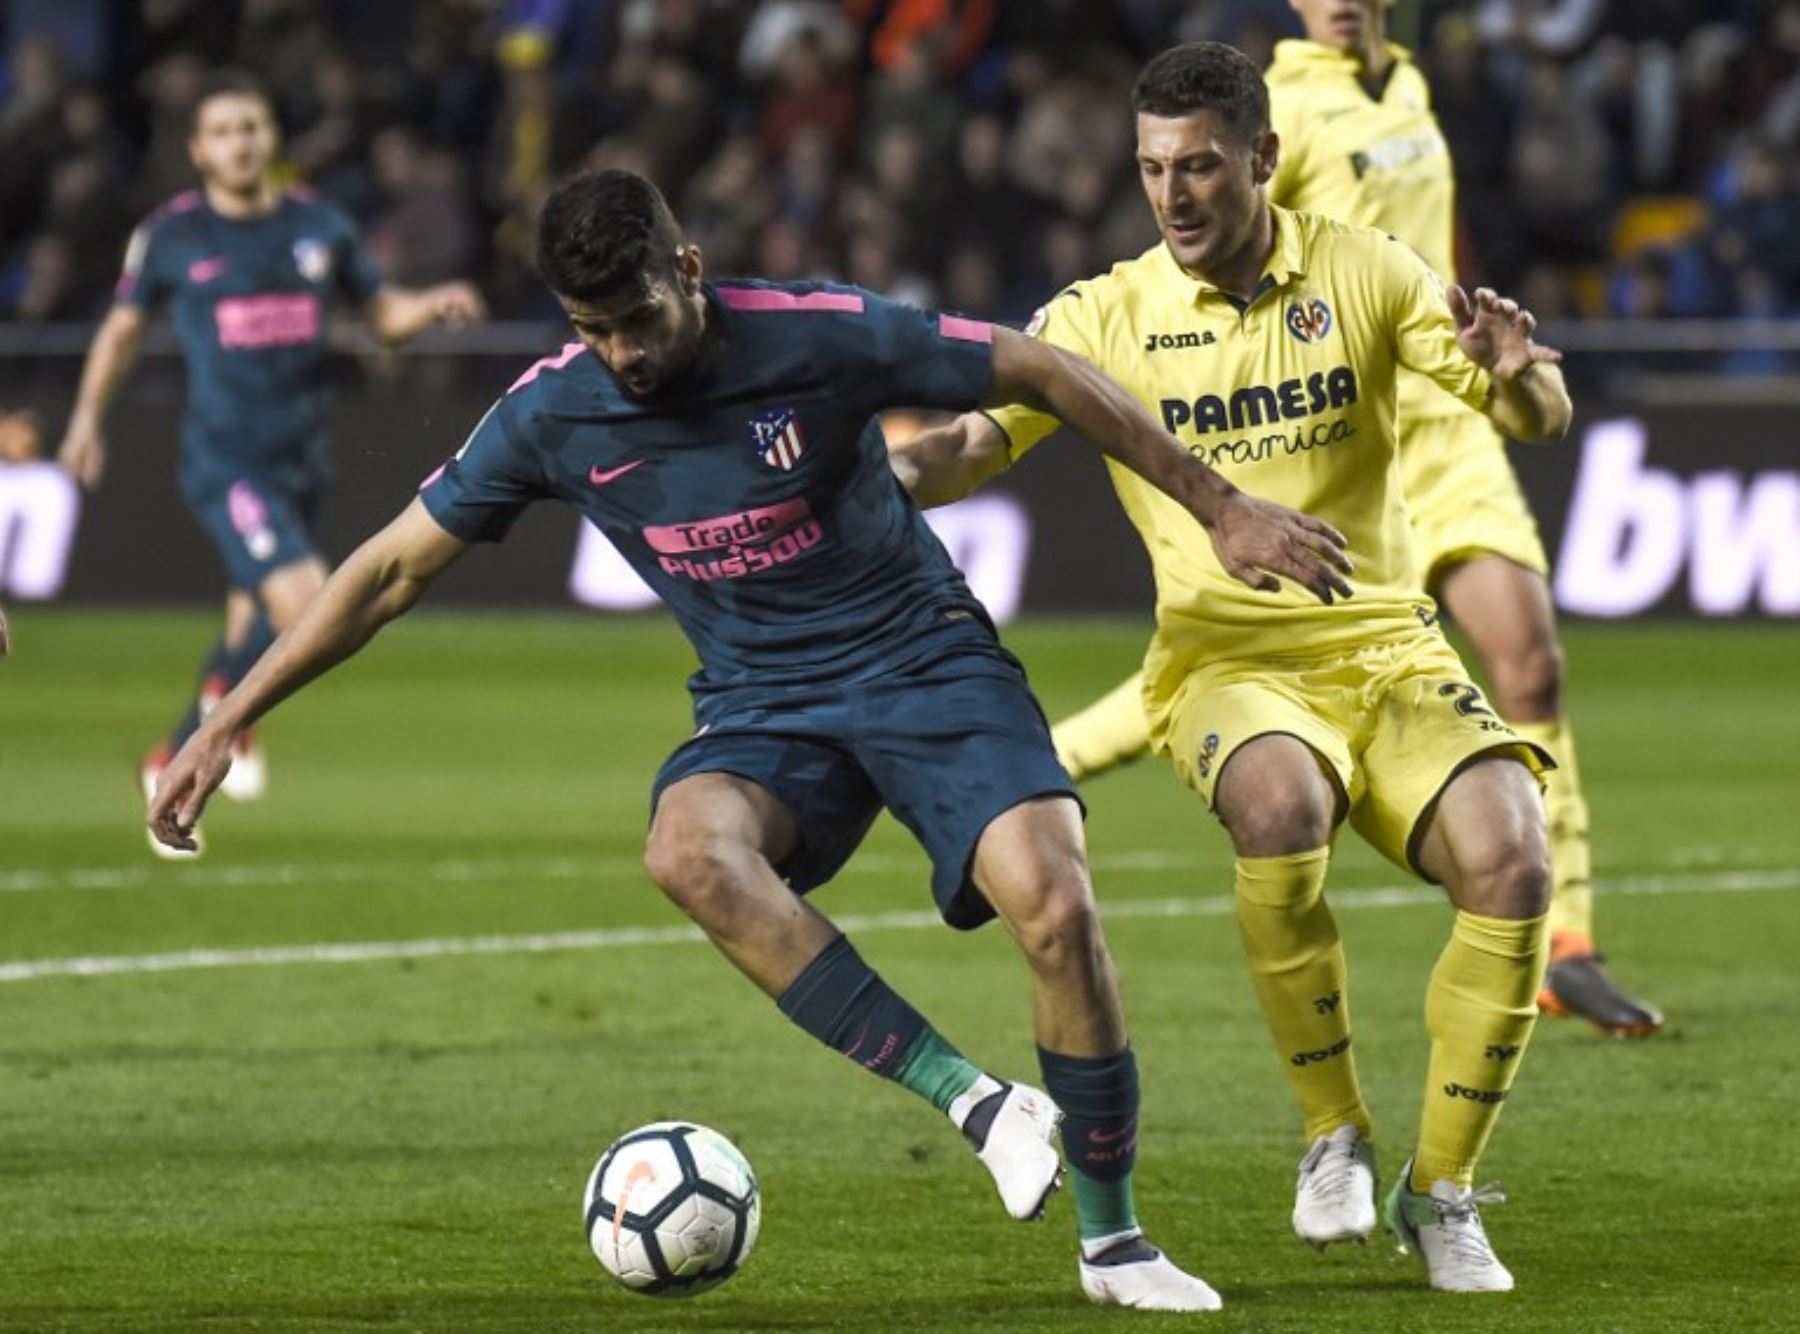 El defensa italiano del Villarreal Daniele Bonera compite con el delantero español del Atlético de Madrid Diego Costa durante el partido de fútbol de la Liga española.Foto:AFP